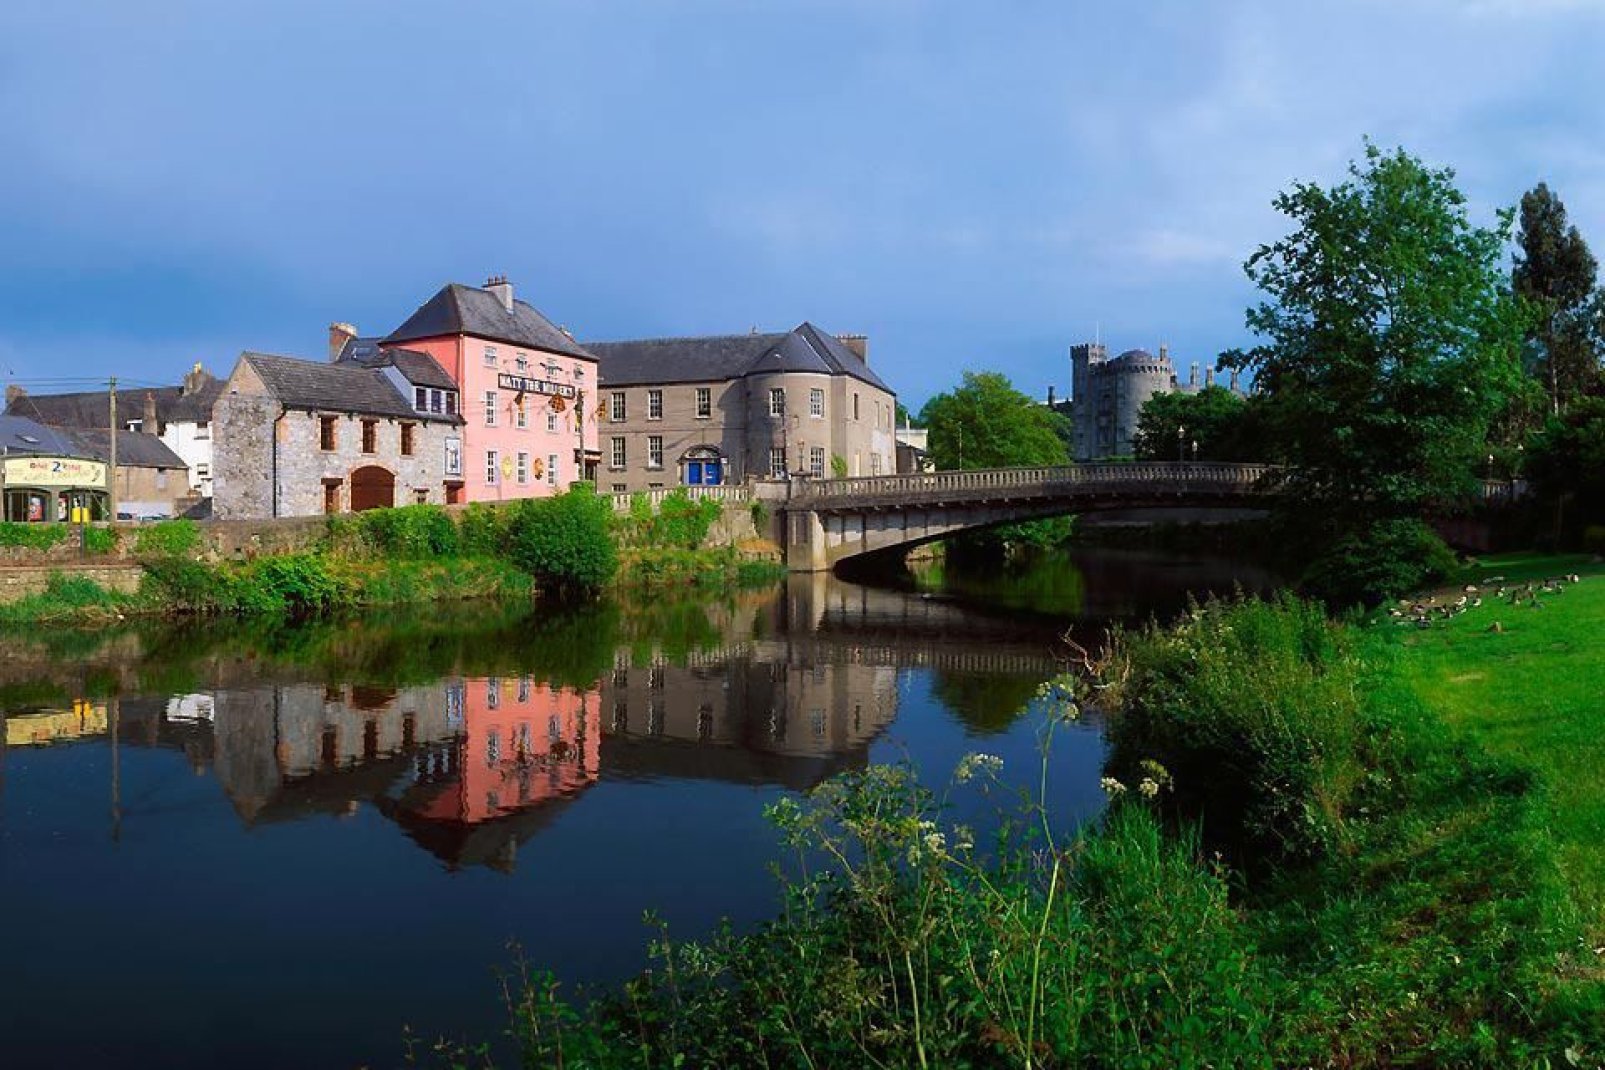 Fotos dieser Art geben das idyllische Ambiente von Kilkenny wider - eine kleine ruhige Stadt am Rande eines Flusses.